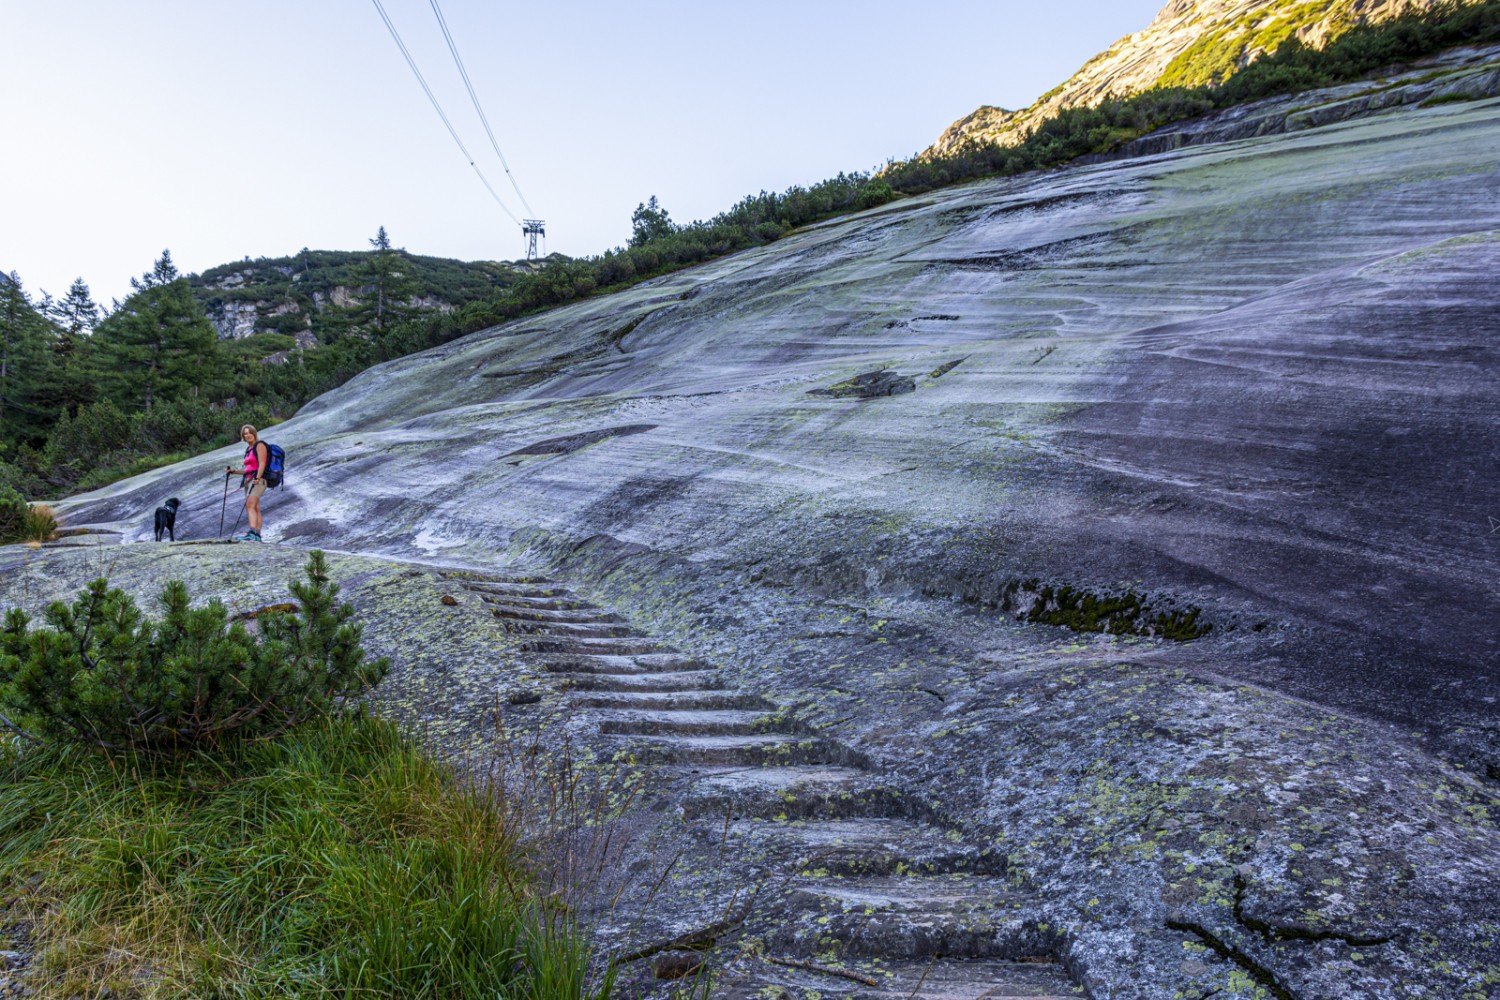 Typisches Merkmal des Grimselgebiets: Vom Gletscher glatt geschliffene Granitplatten. Bild: Franz Ulrich